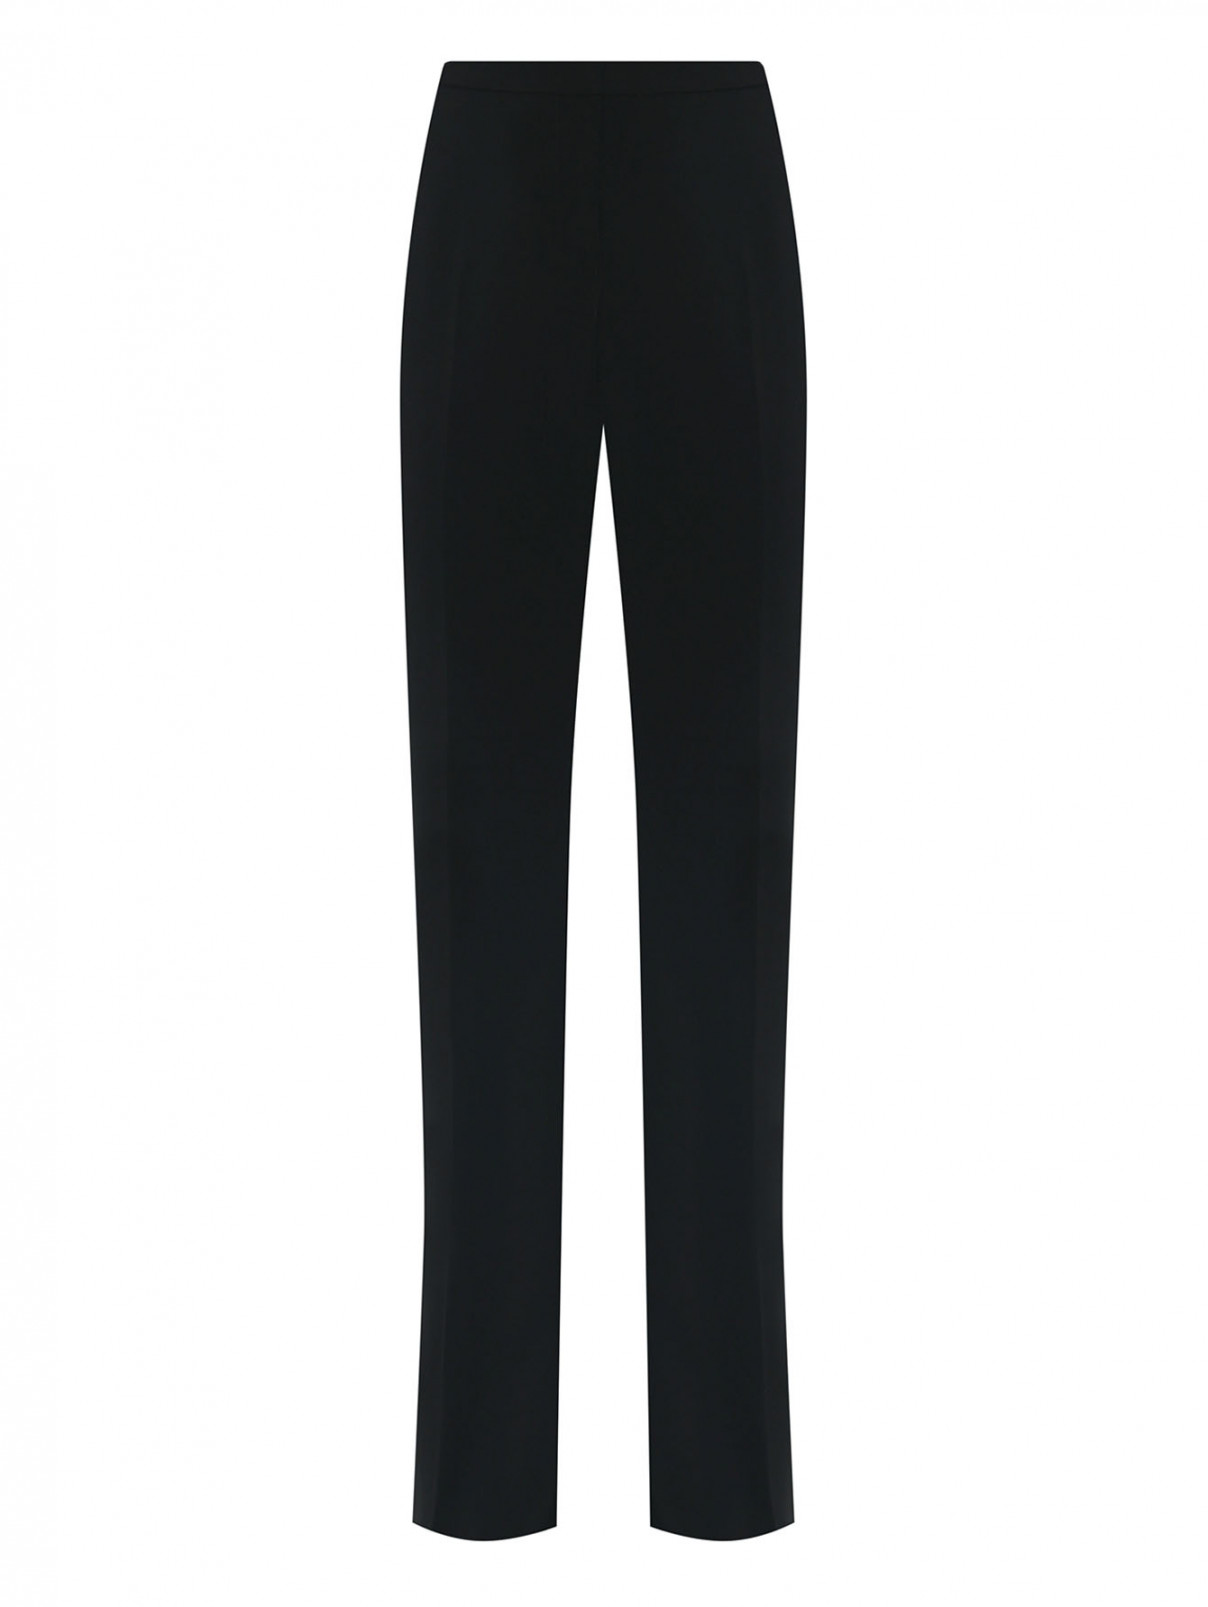 Расклешенные брюки на молнии PINKO  –  Общий вид  – Цвет:  Черный